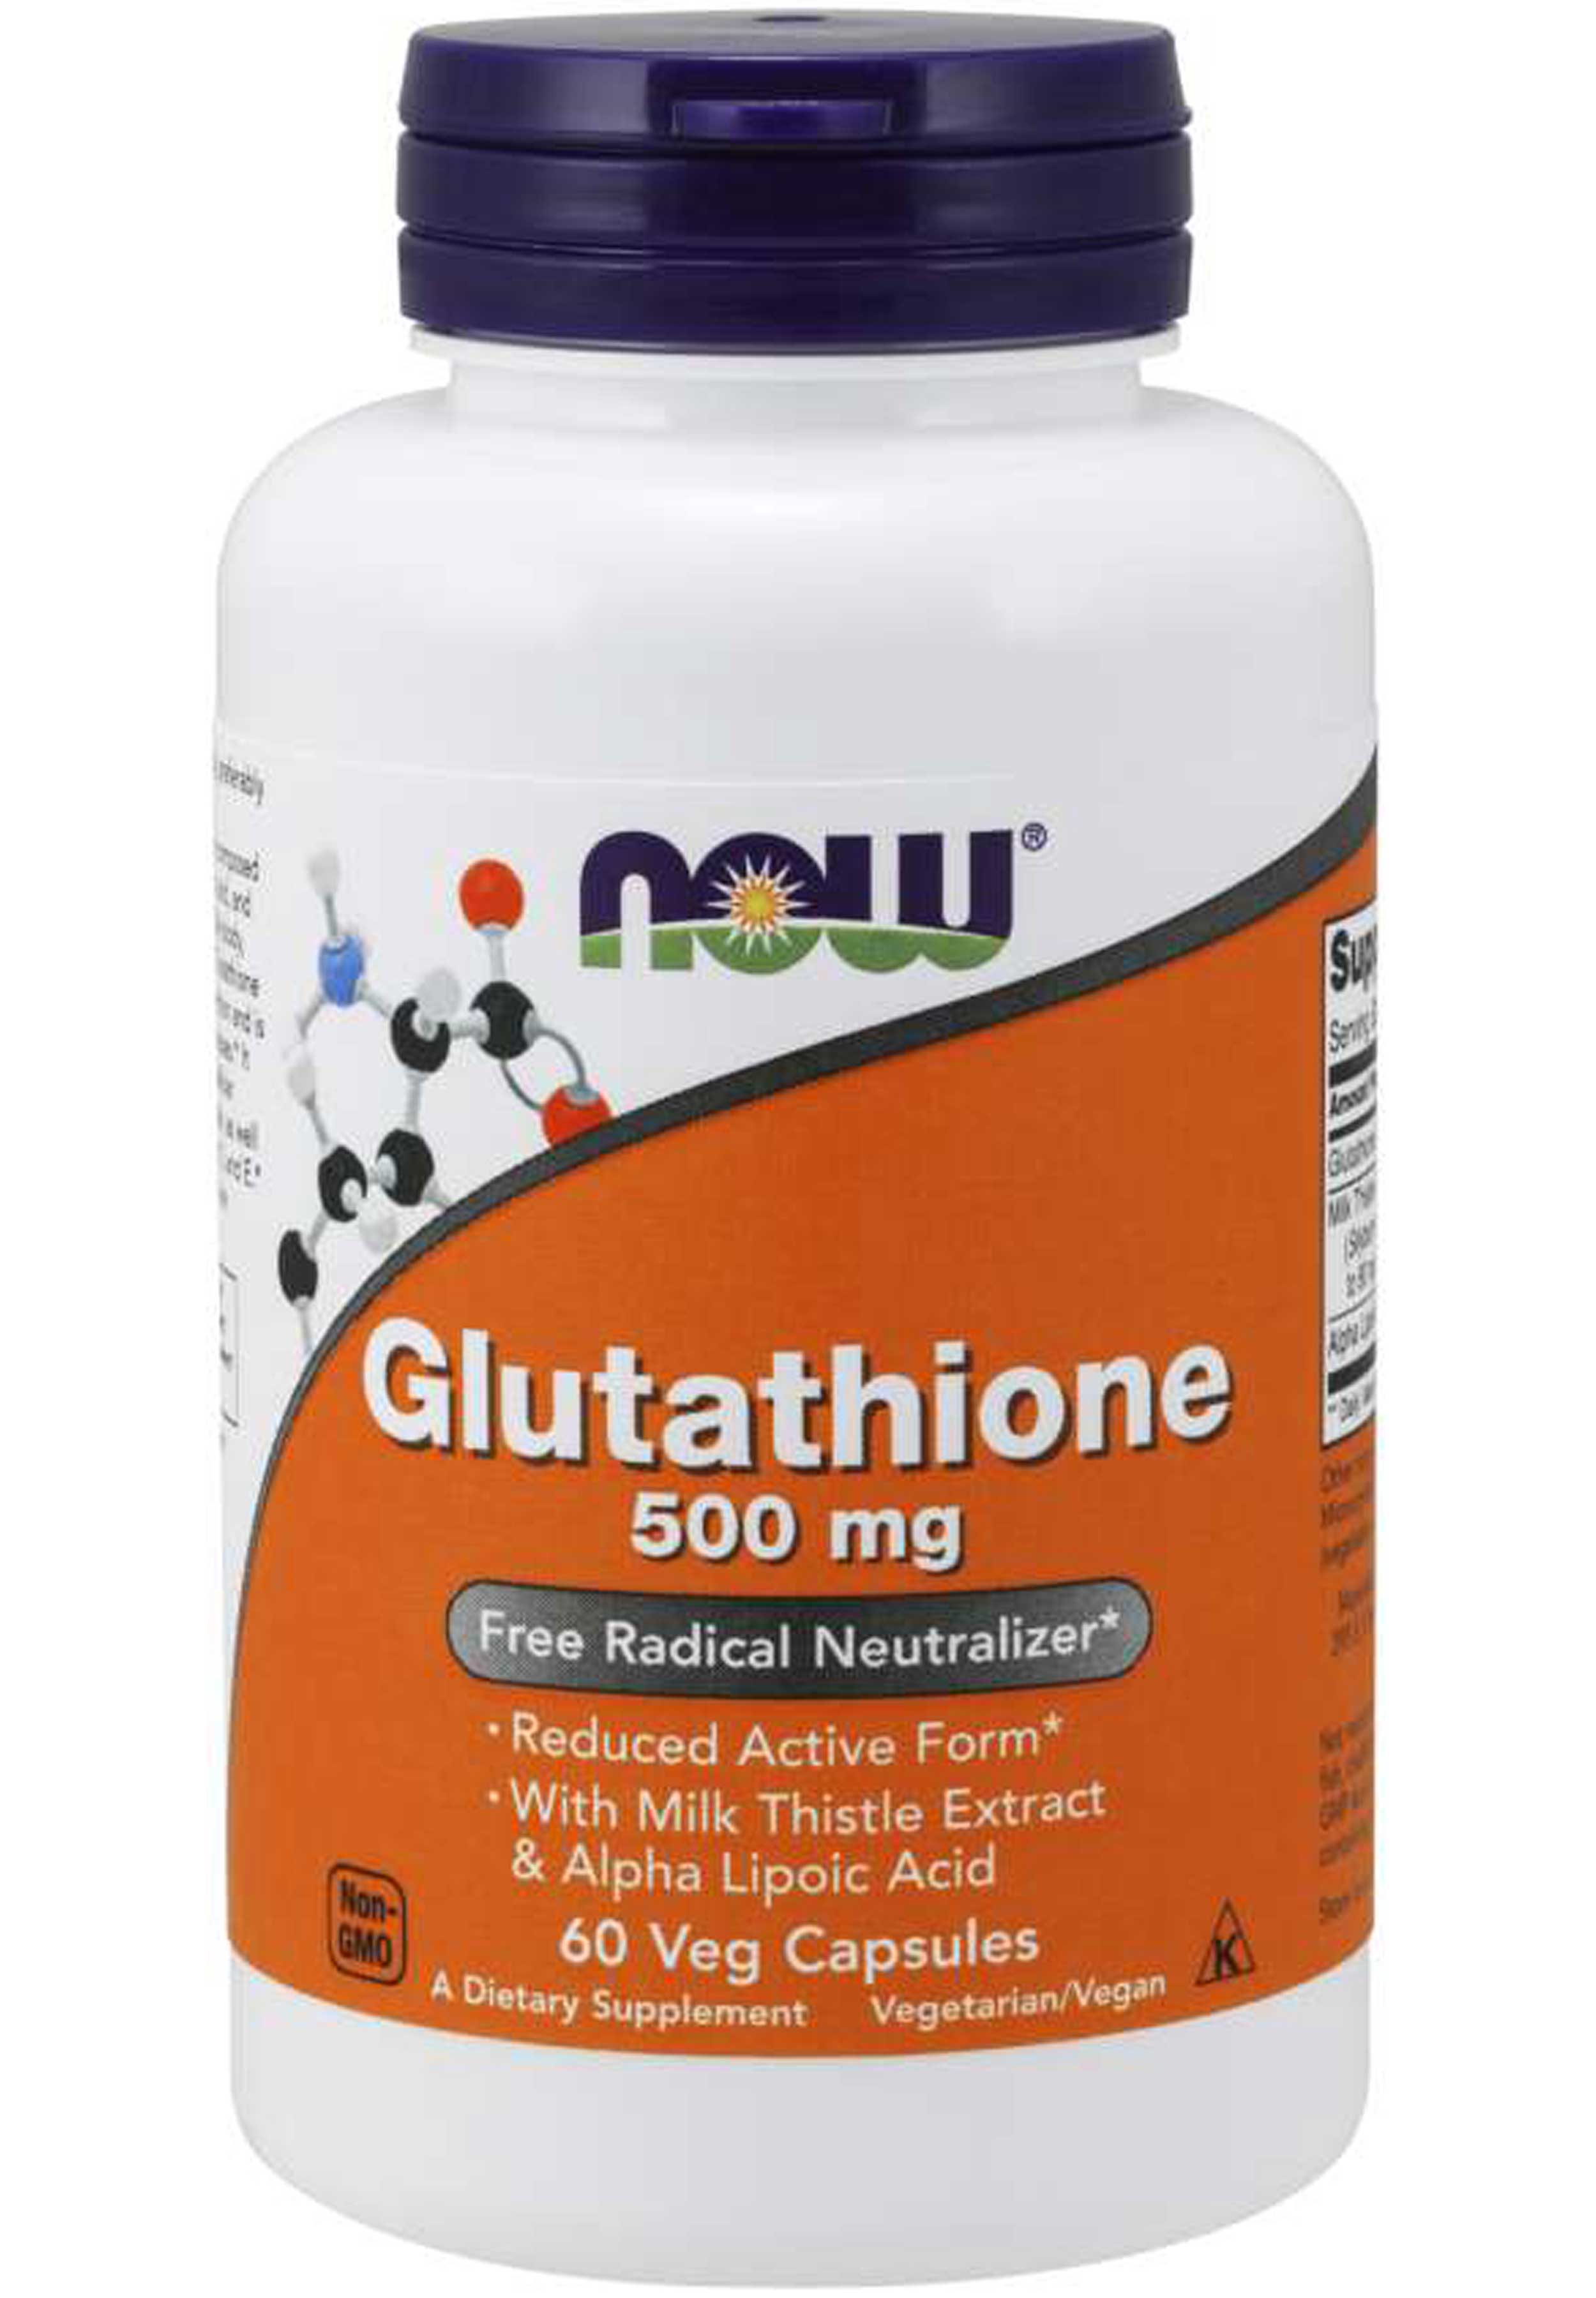 NOW Glutathione 500 mg